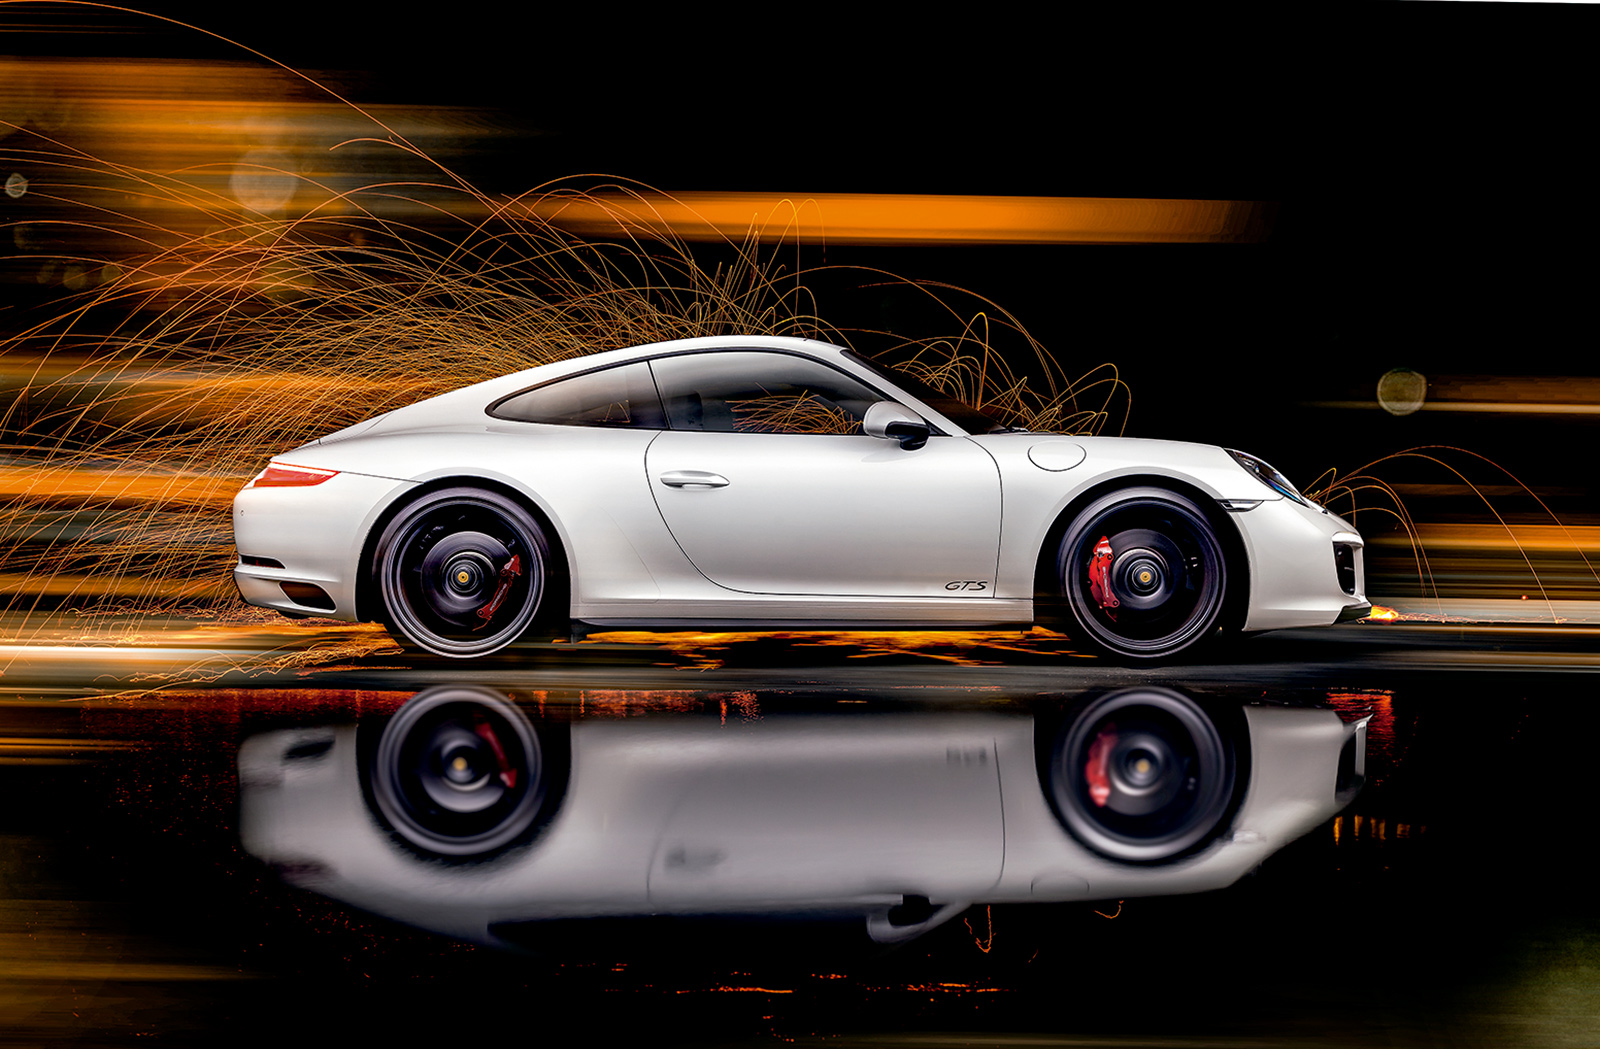  911 GTS behöver 3,6 sekunder för att gå från 0 till 100 km/h